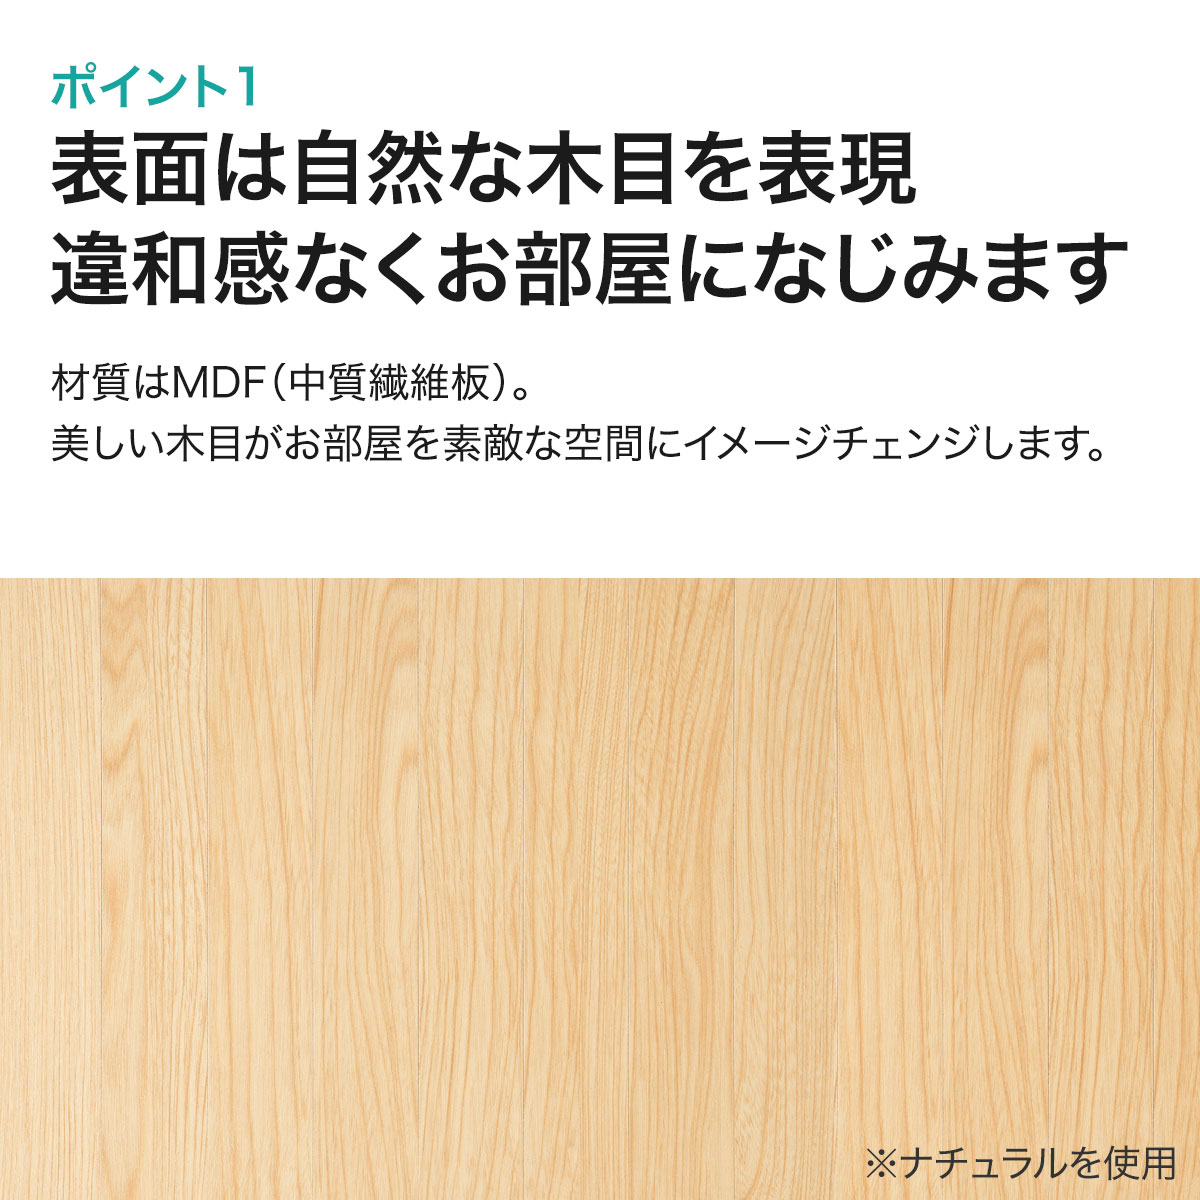 ウッドカーペット 江戸間6帖(クラウドNA)通販 ニトリネット【公式】 家具・インテリア通販